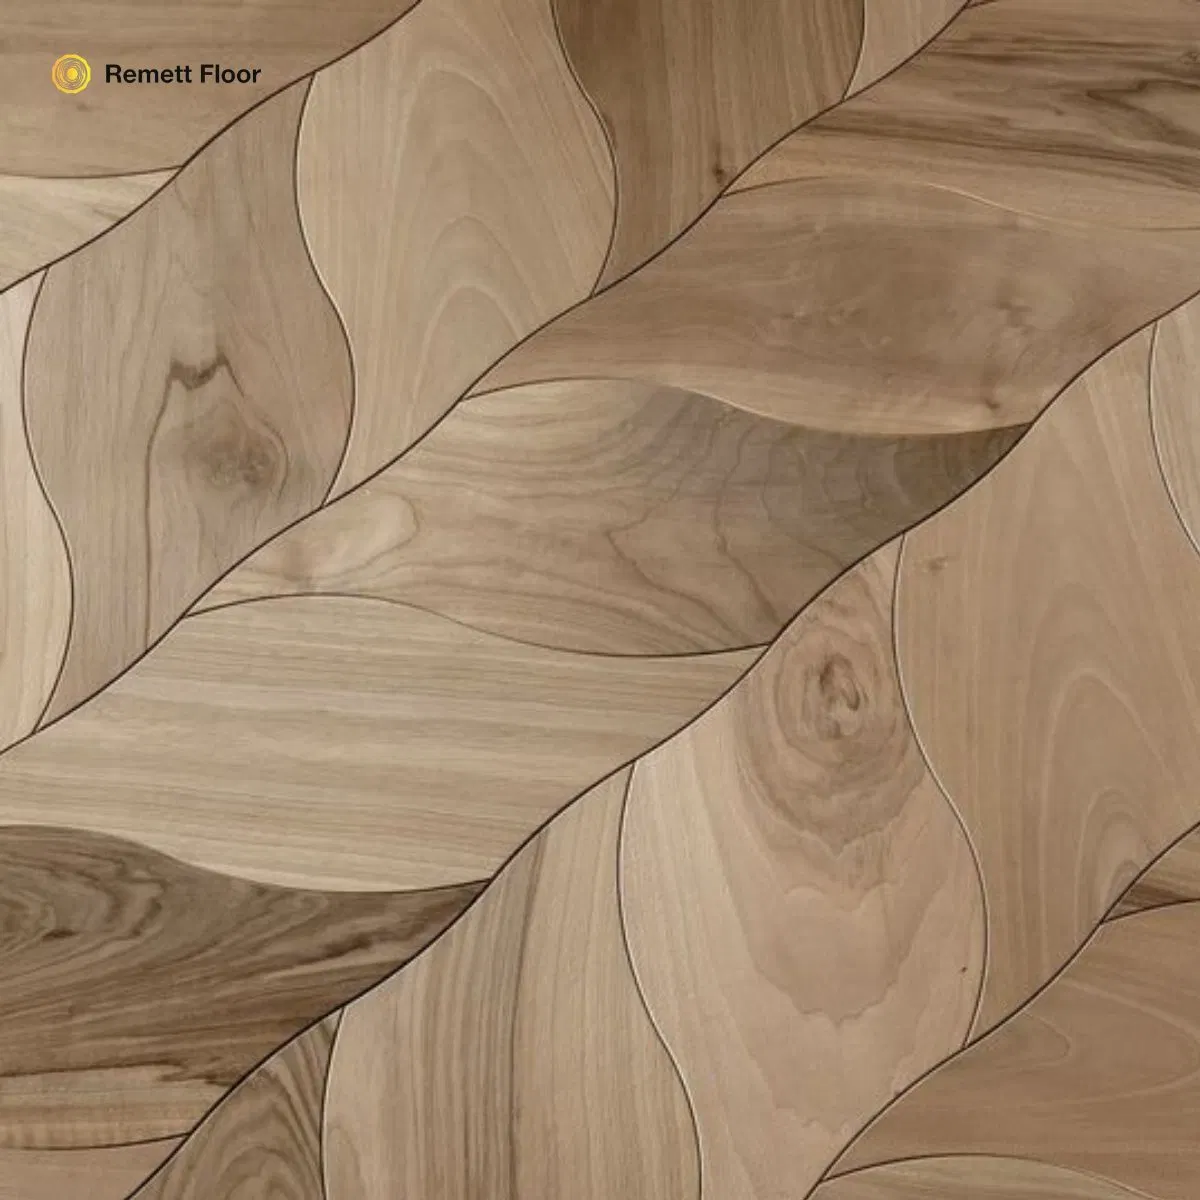 190mm de large naturel chêne blanc massif Bois+parquet Vente à chaud États-Unis planchers de bois dur en chêne vieilli